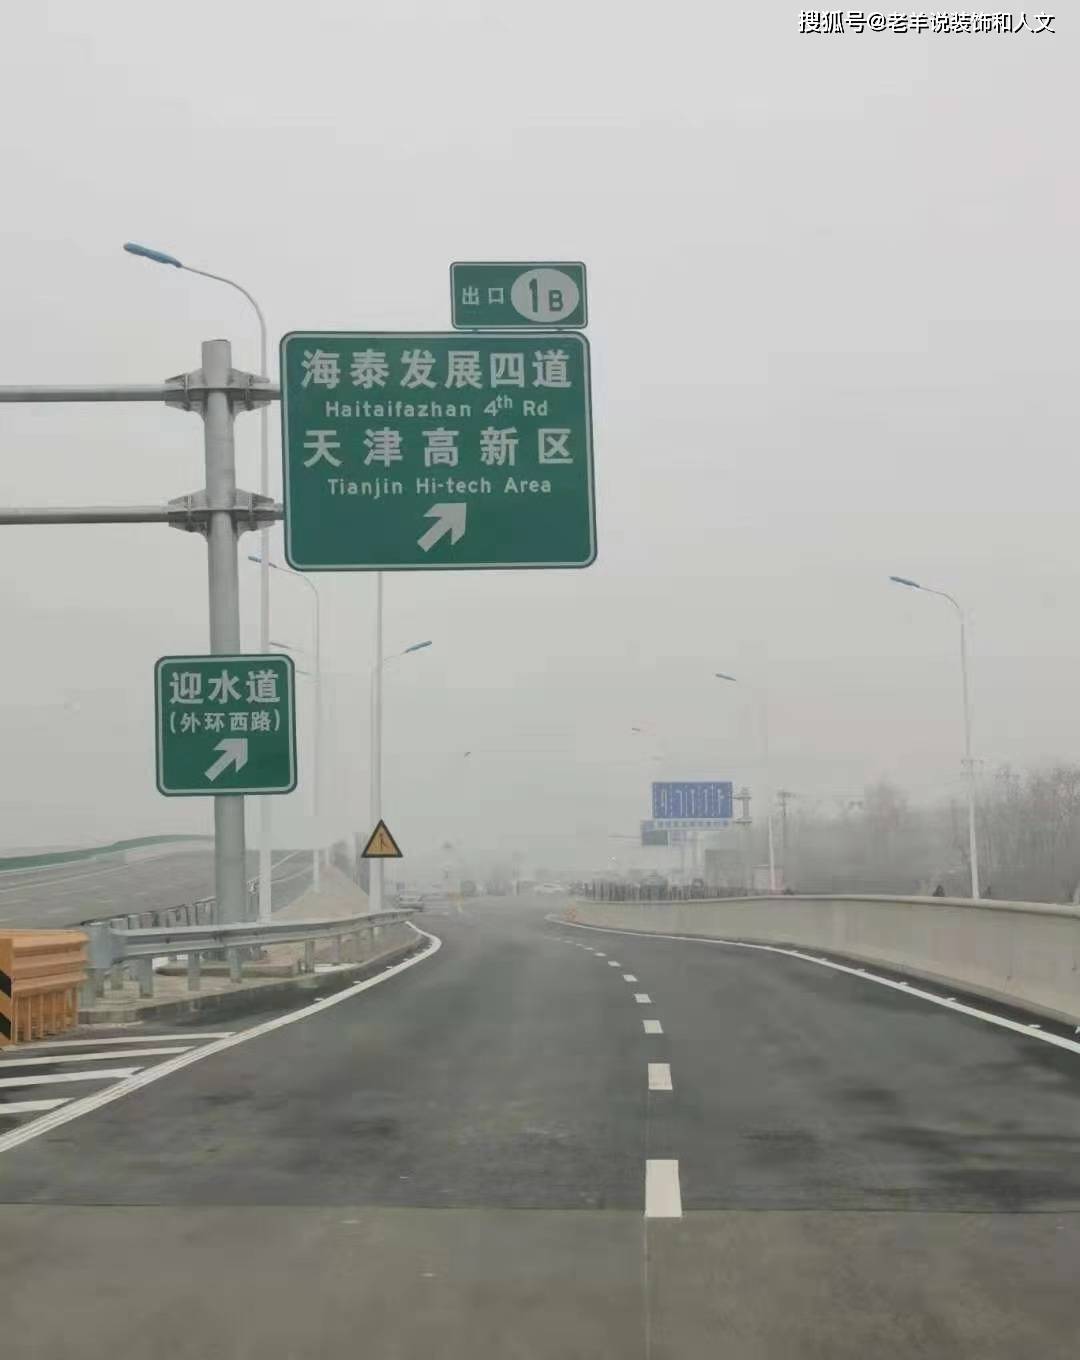 津沧高速天津终点新收费站及工西路等辅路工程今天开通